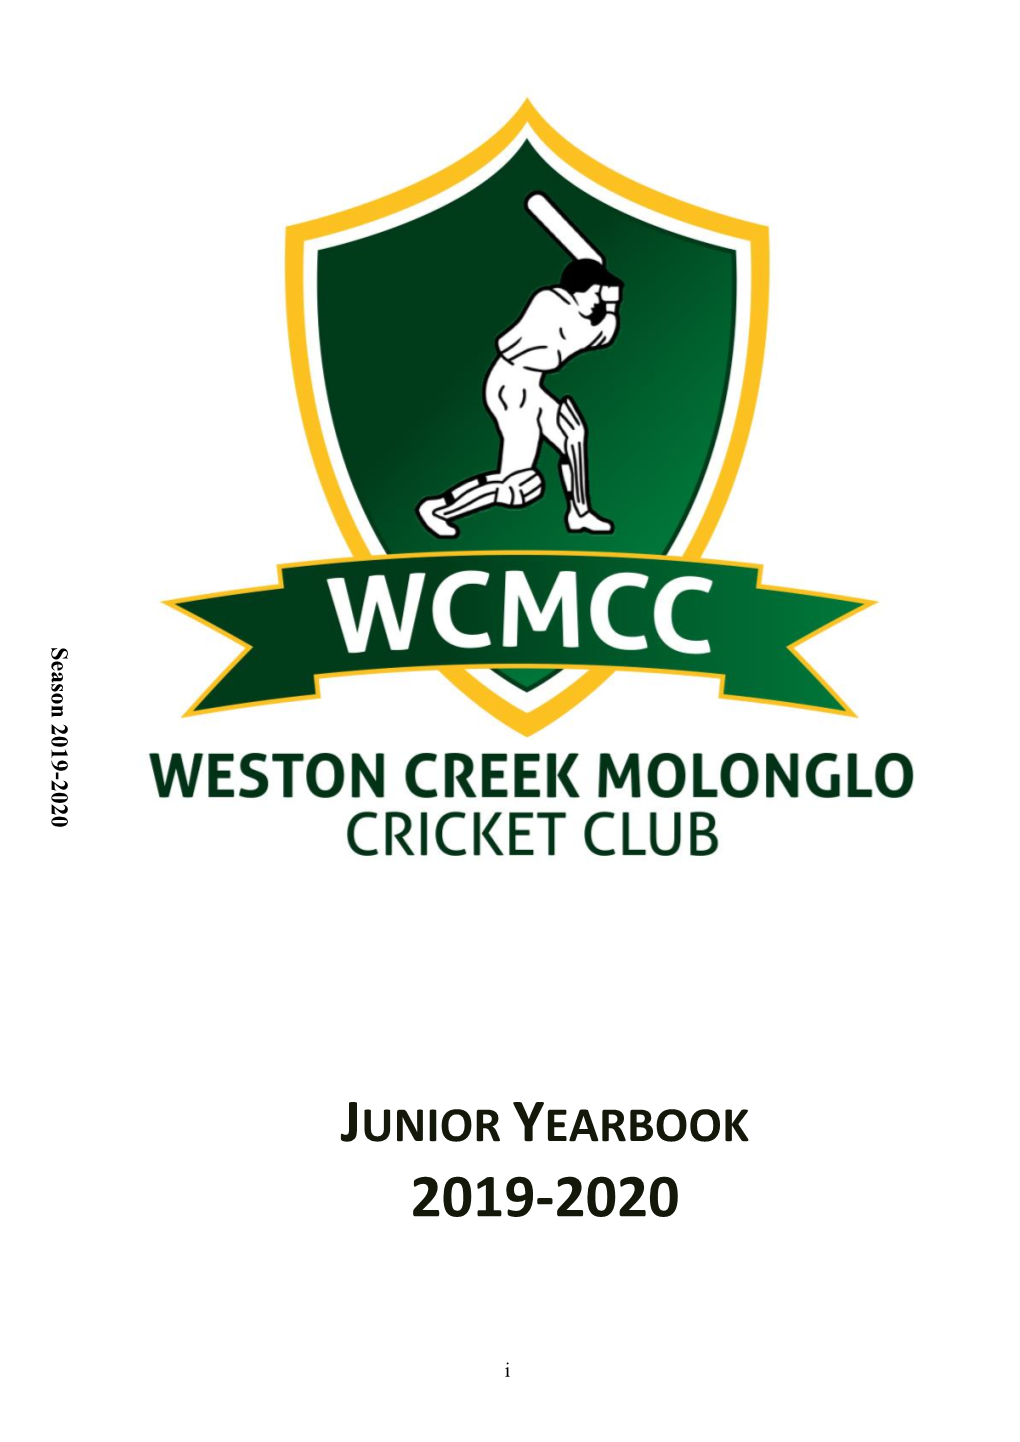 Weston Creek Molonglo Cricket Club Junior Yearbook for 2019-2020 Season